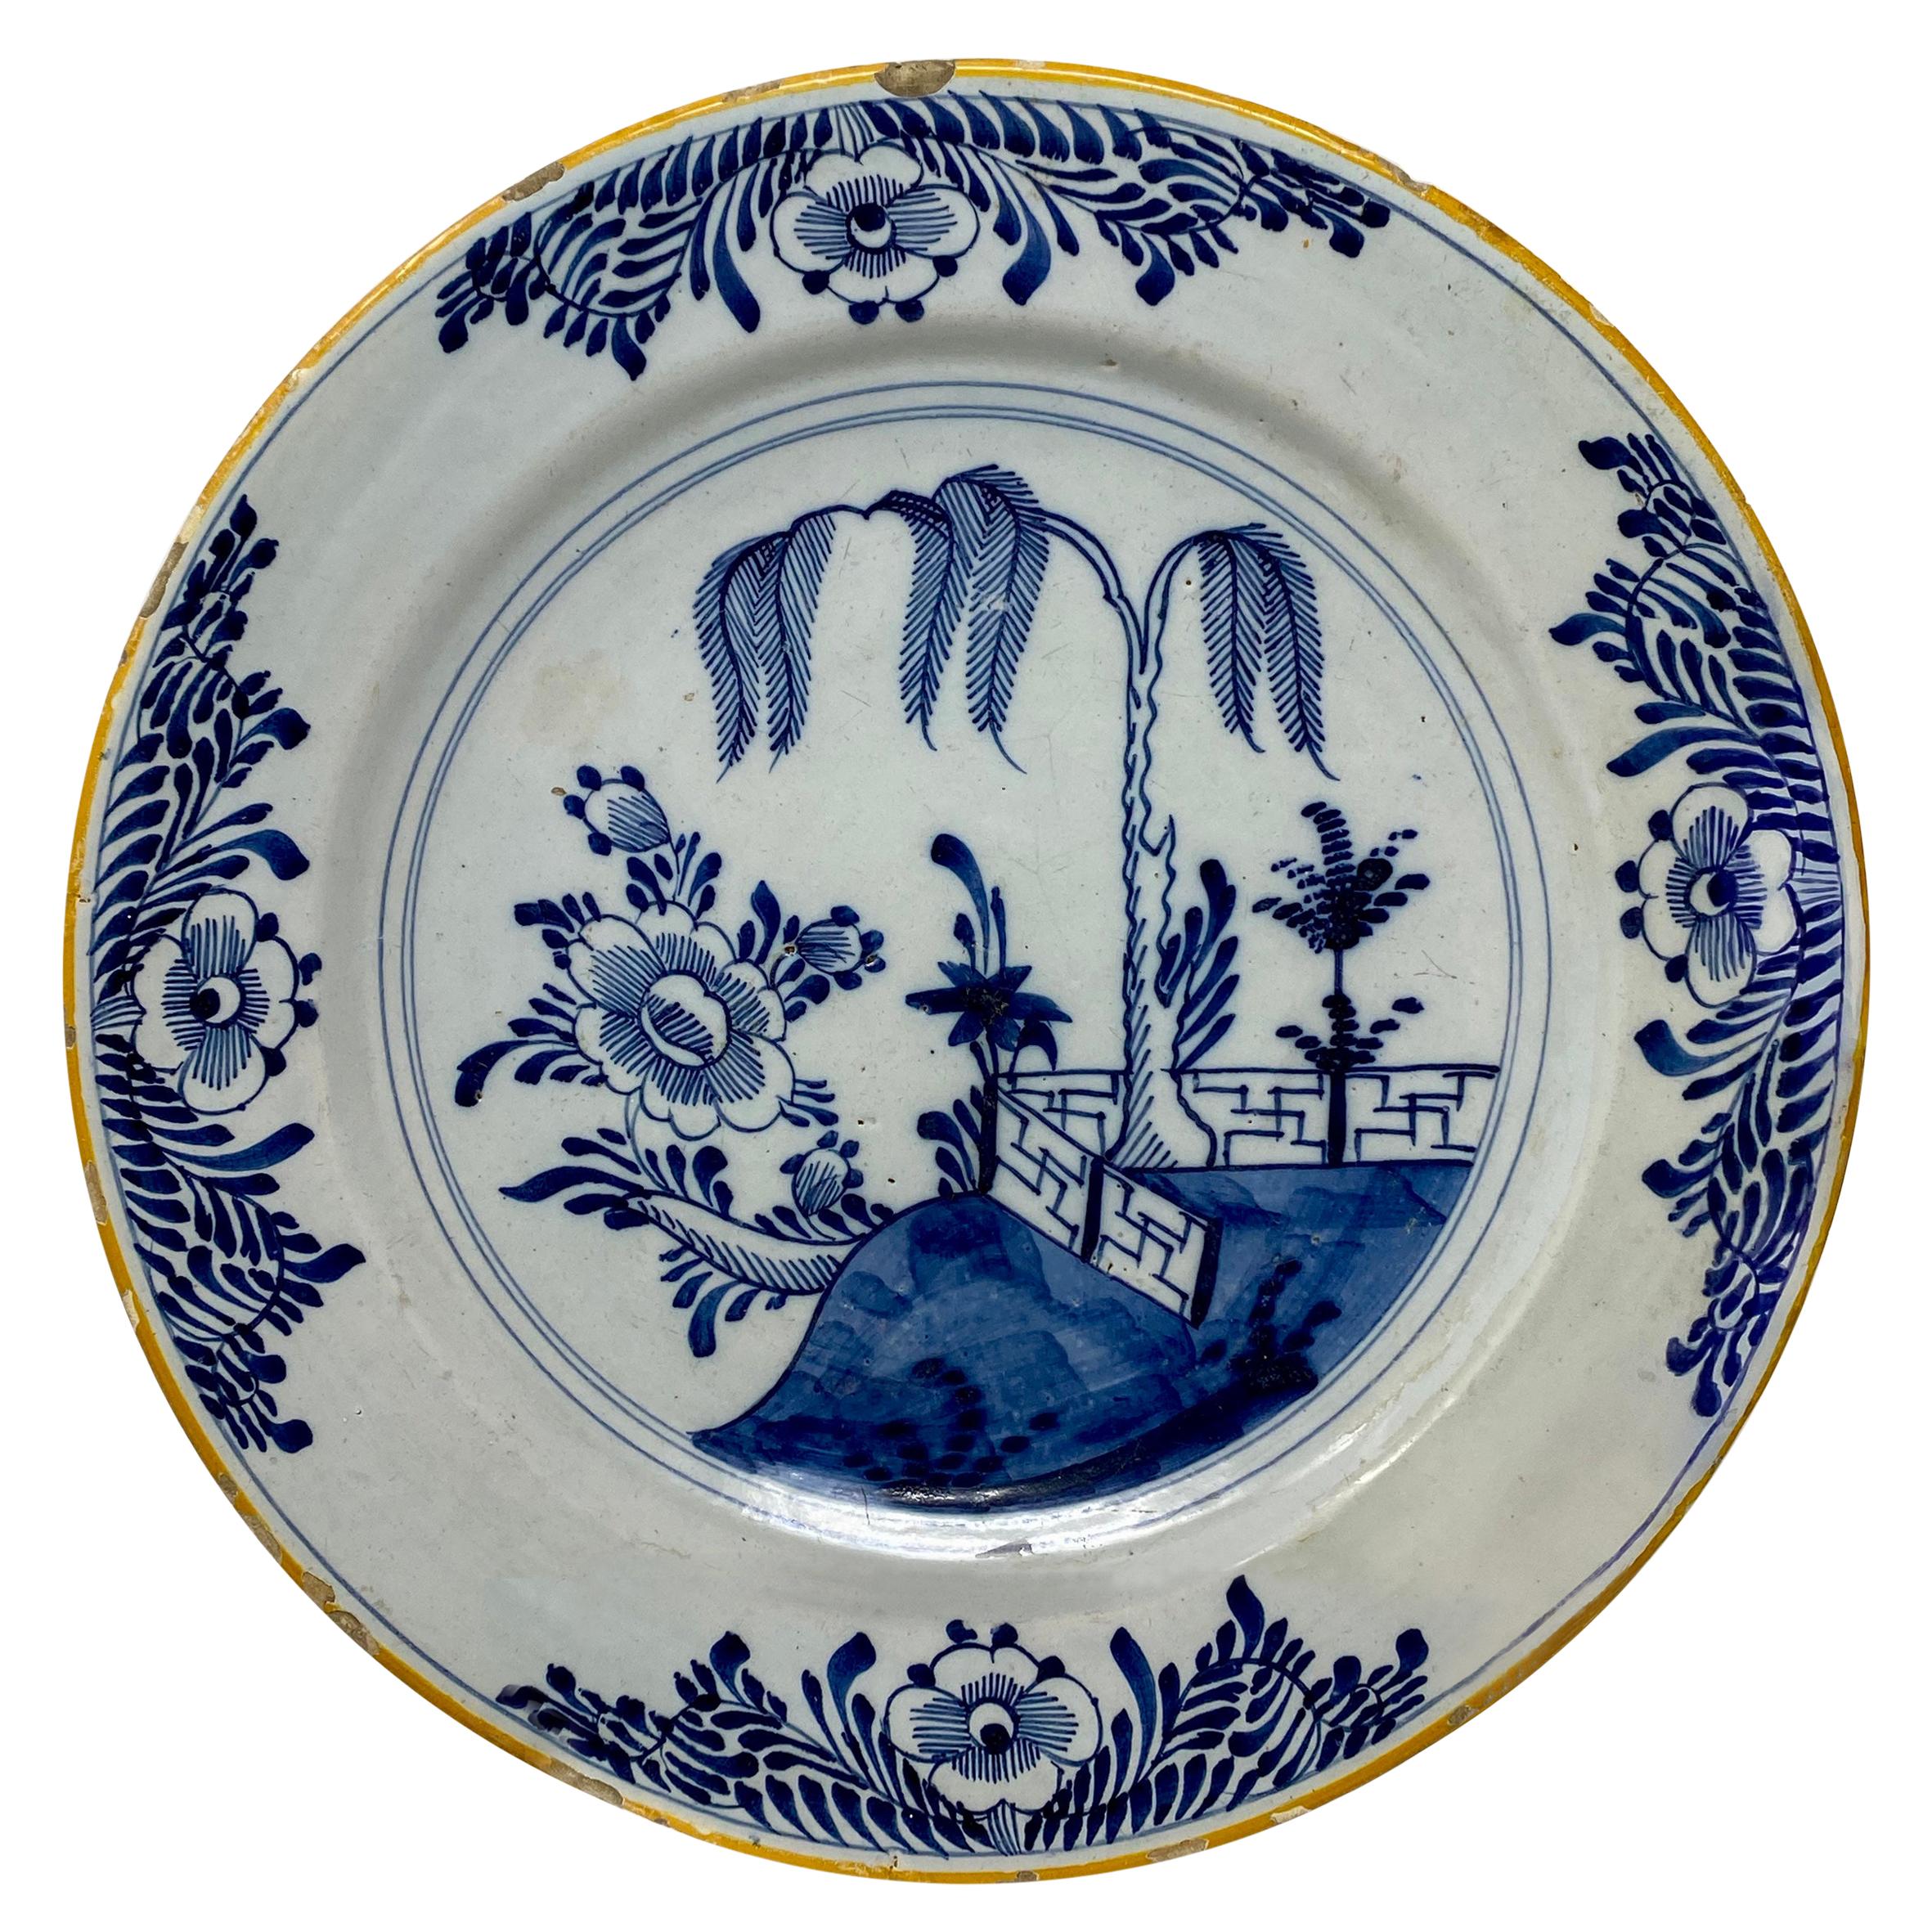 Assiette de présentation ancienne en porcelaine néerlandaise de style chinois, vers 1750-1780